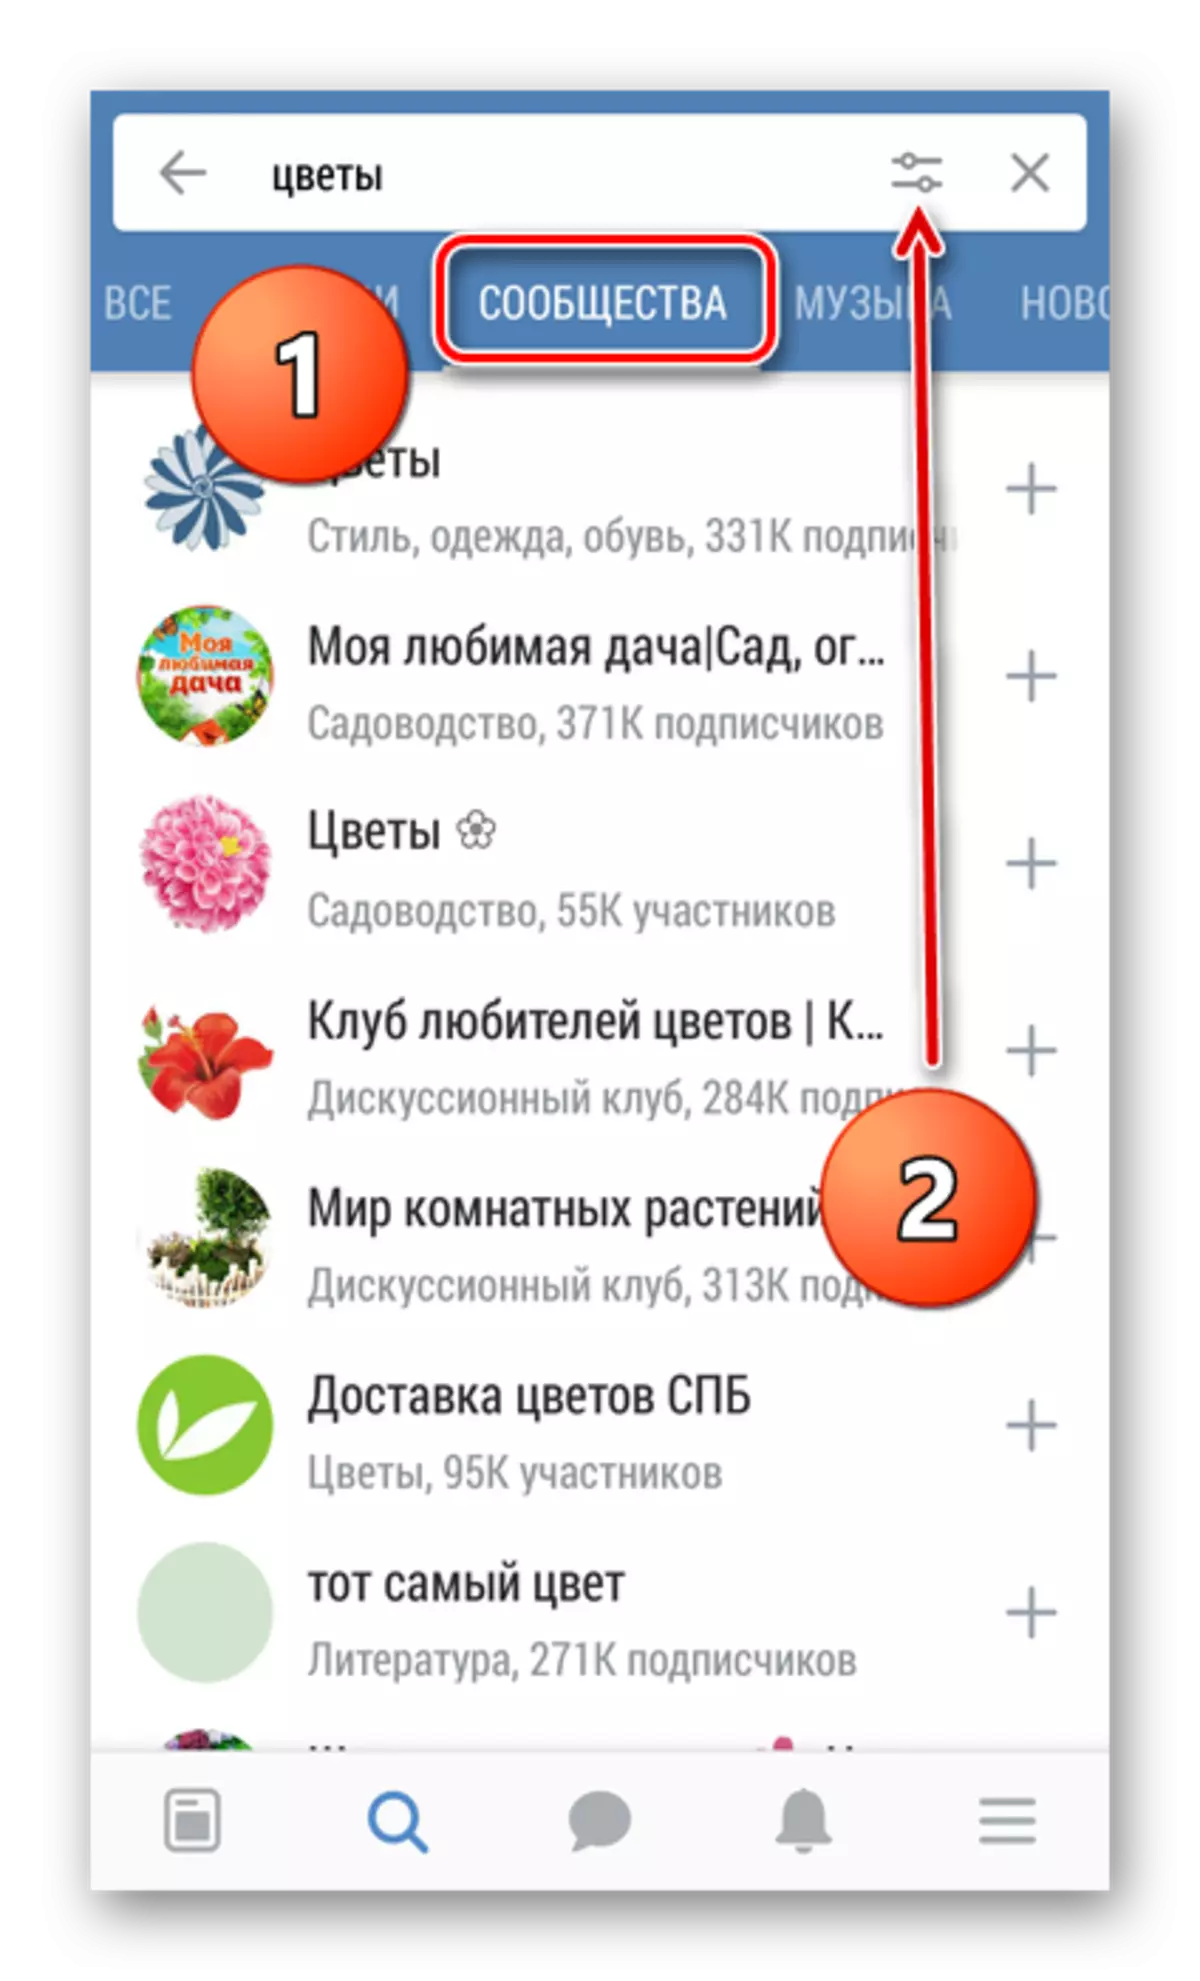 Cari grup di Vkontakte